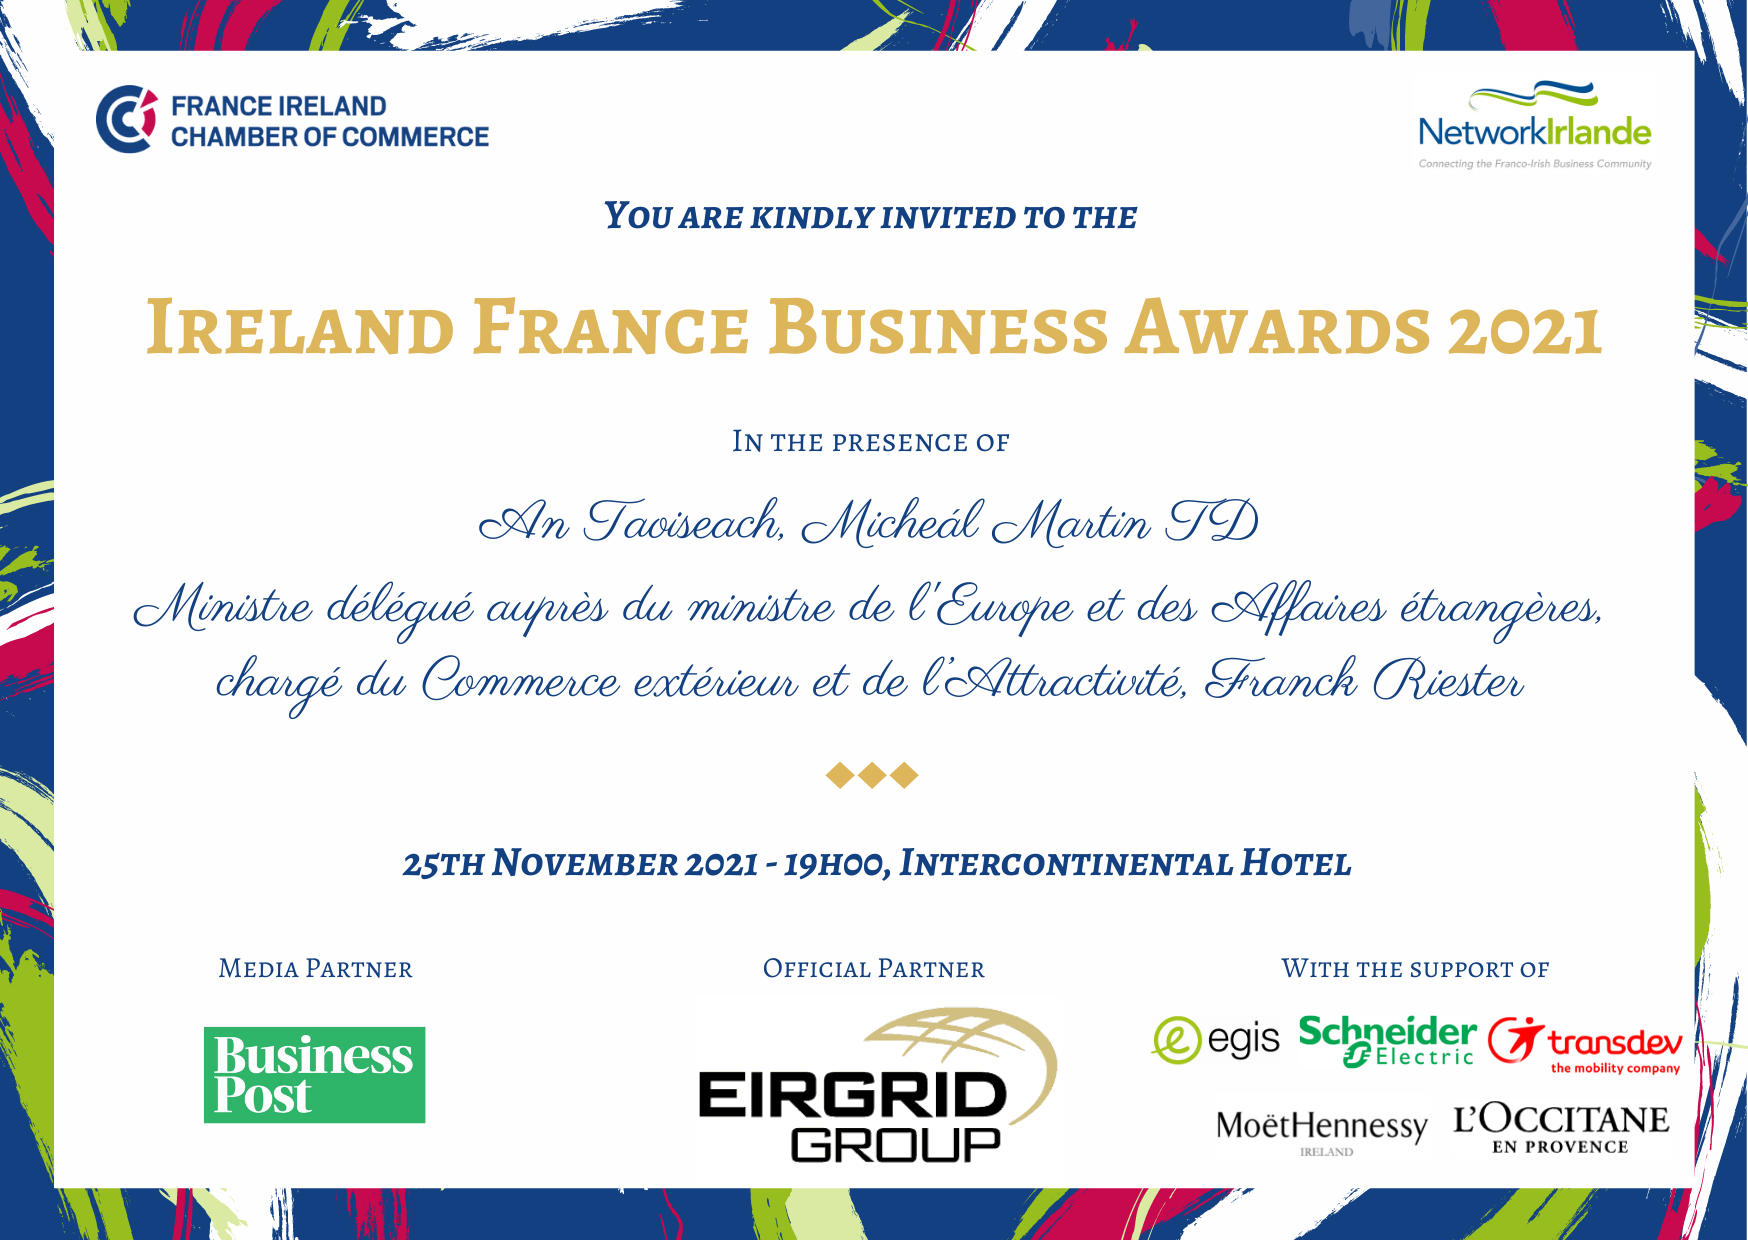 Ireland France Business Awards 2021